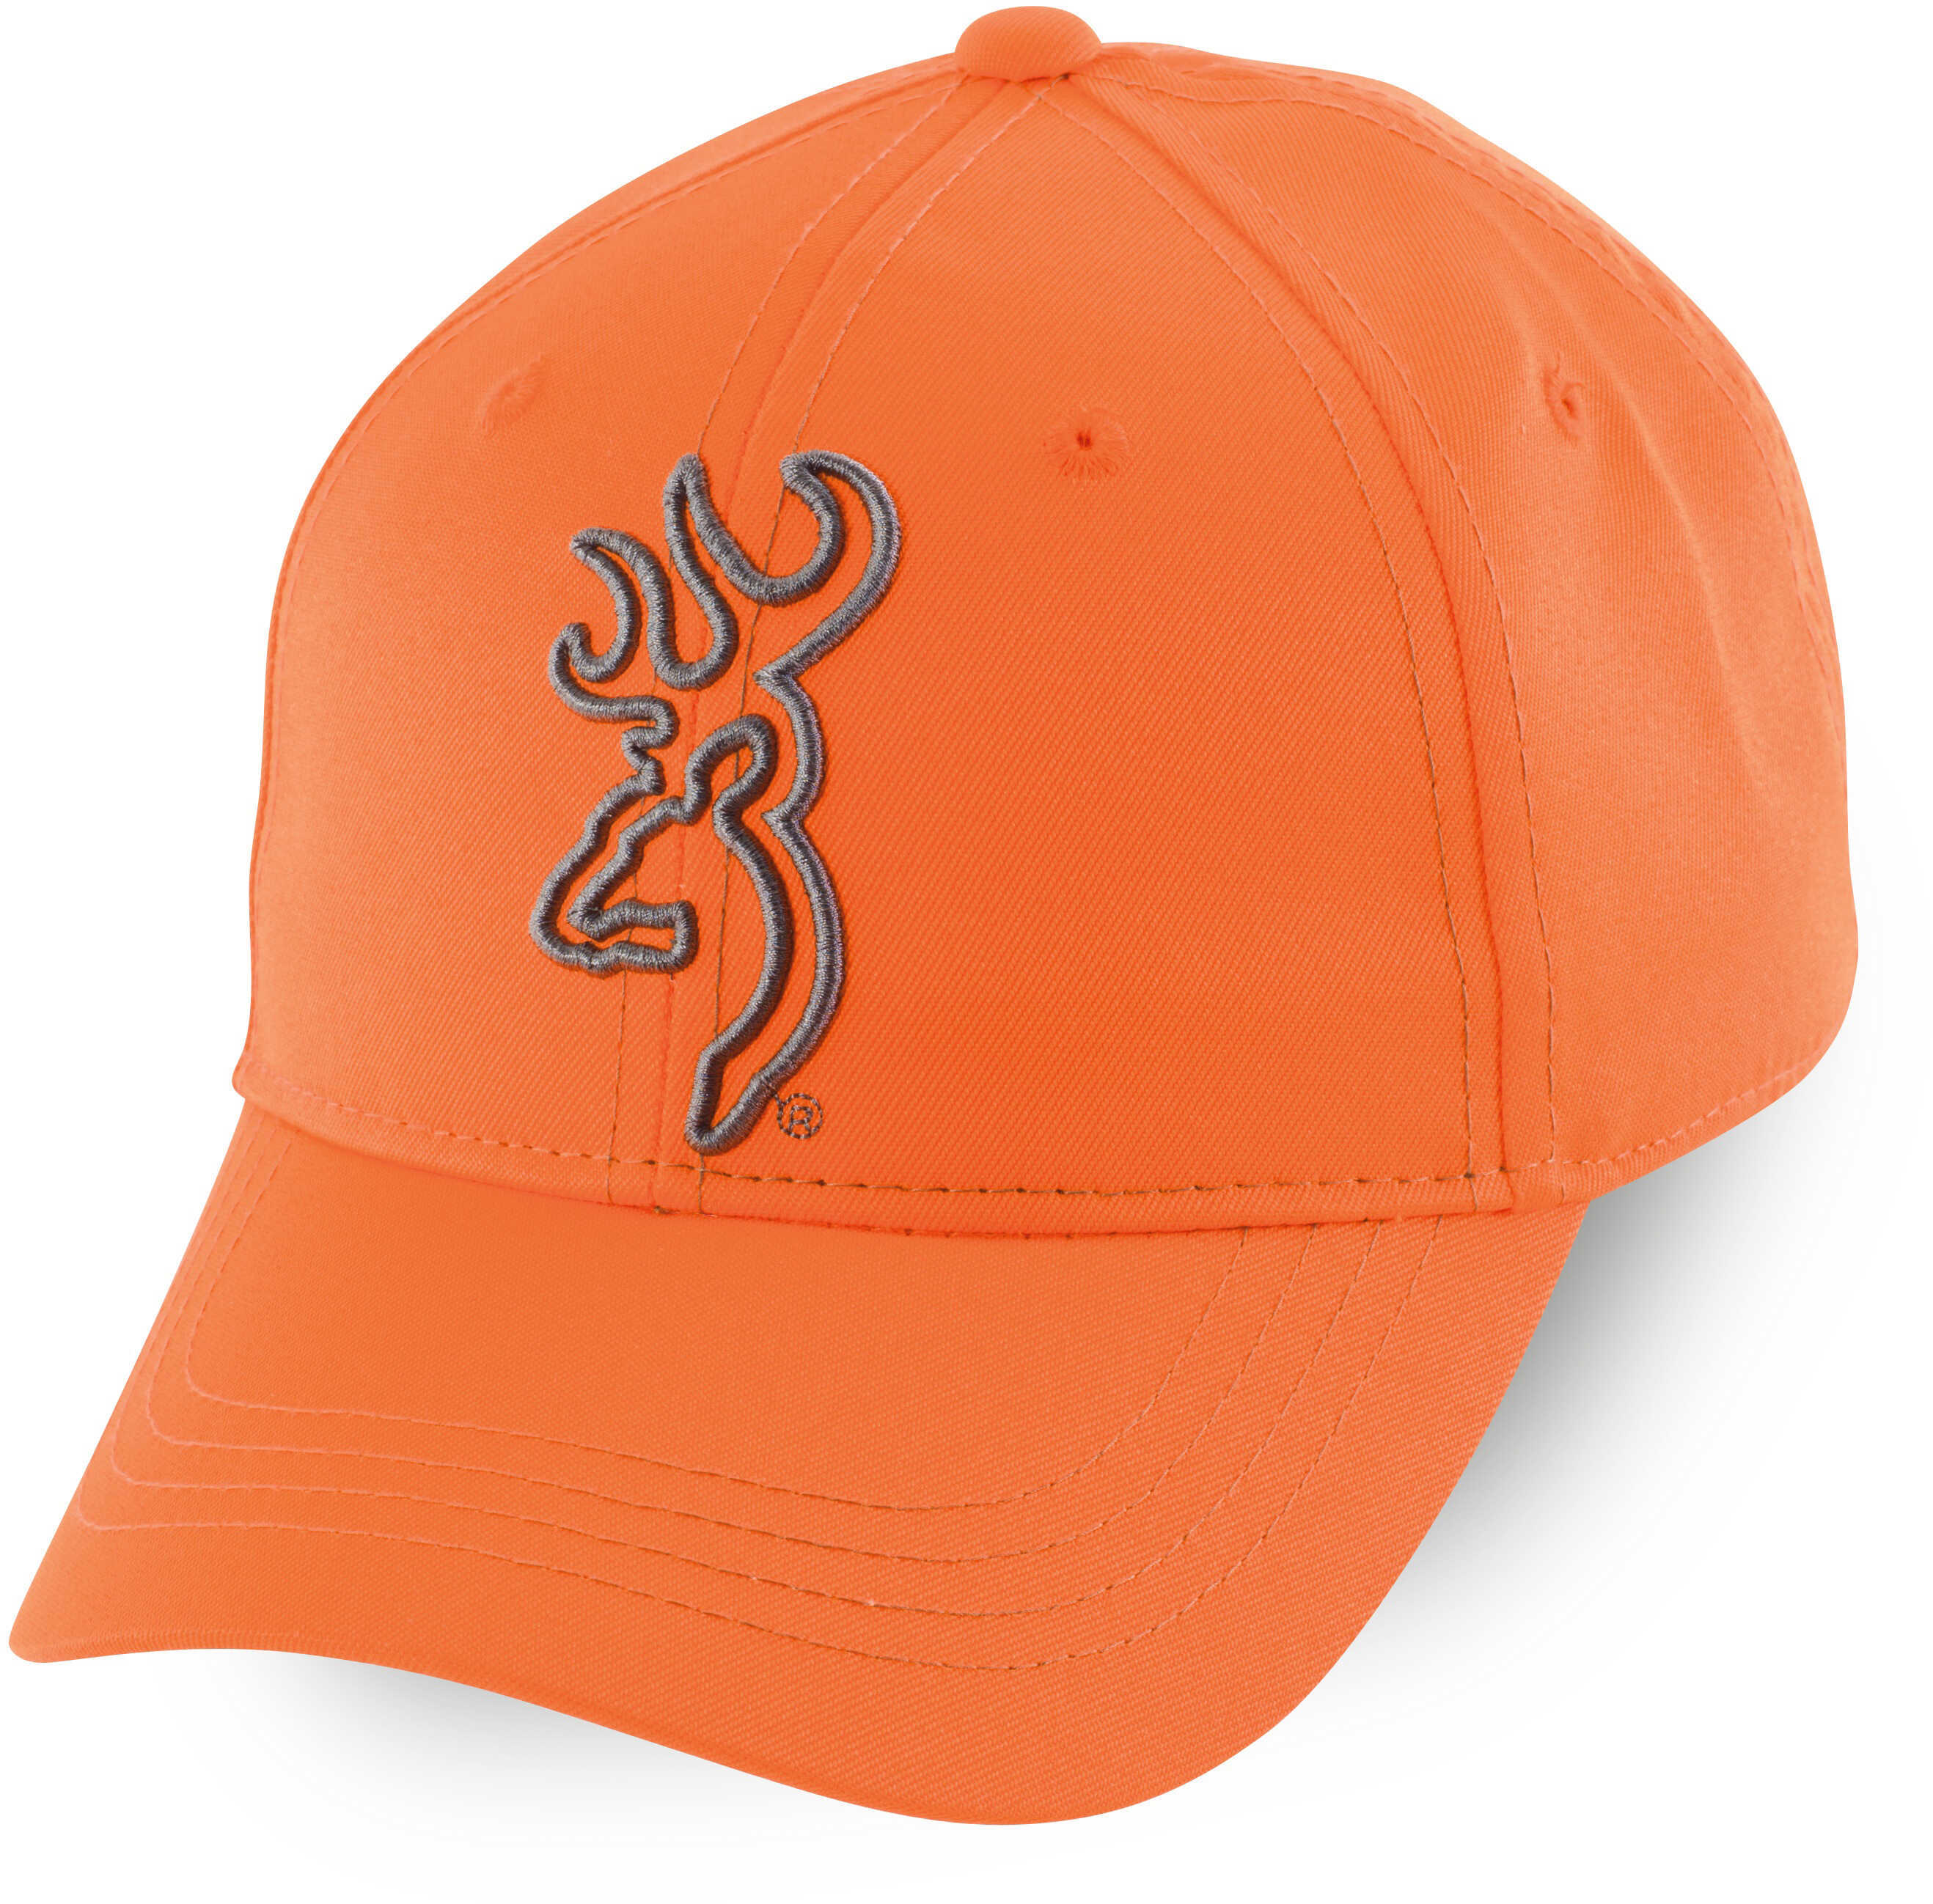 Browning High Vis Hat Blaze Orange Model: 308461591